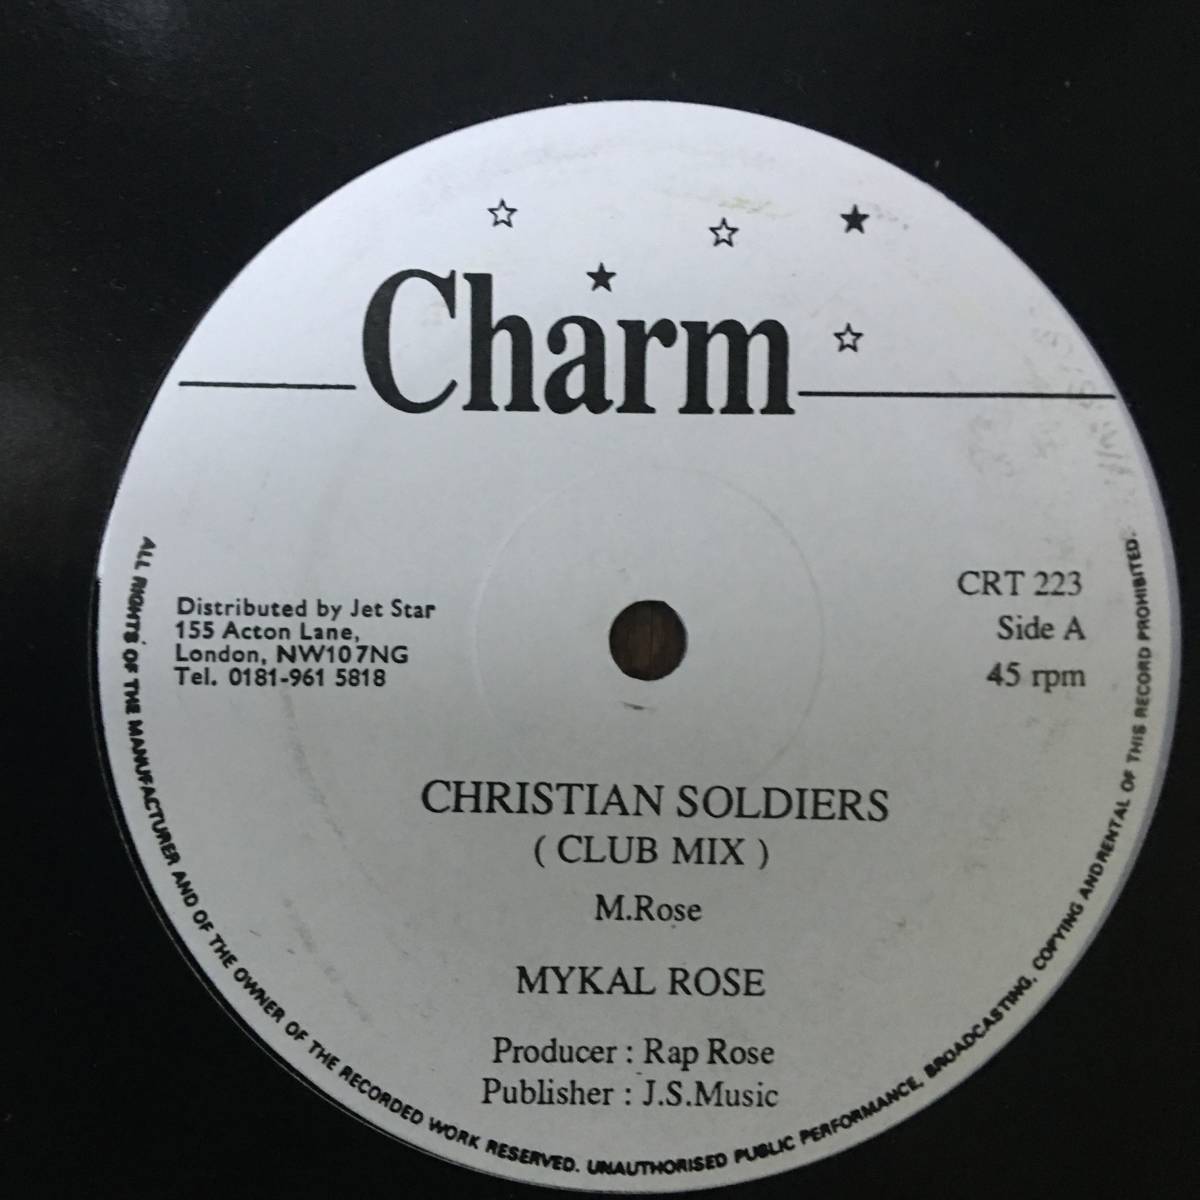 ★送料込み！美盤【Mykal Rose* (Michael Rose) - Christian Soldiers】12inch！Charm CRT 223 UK！ROPE IN riddim！2Mix！Rasta！Roots！